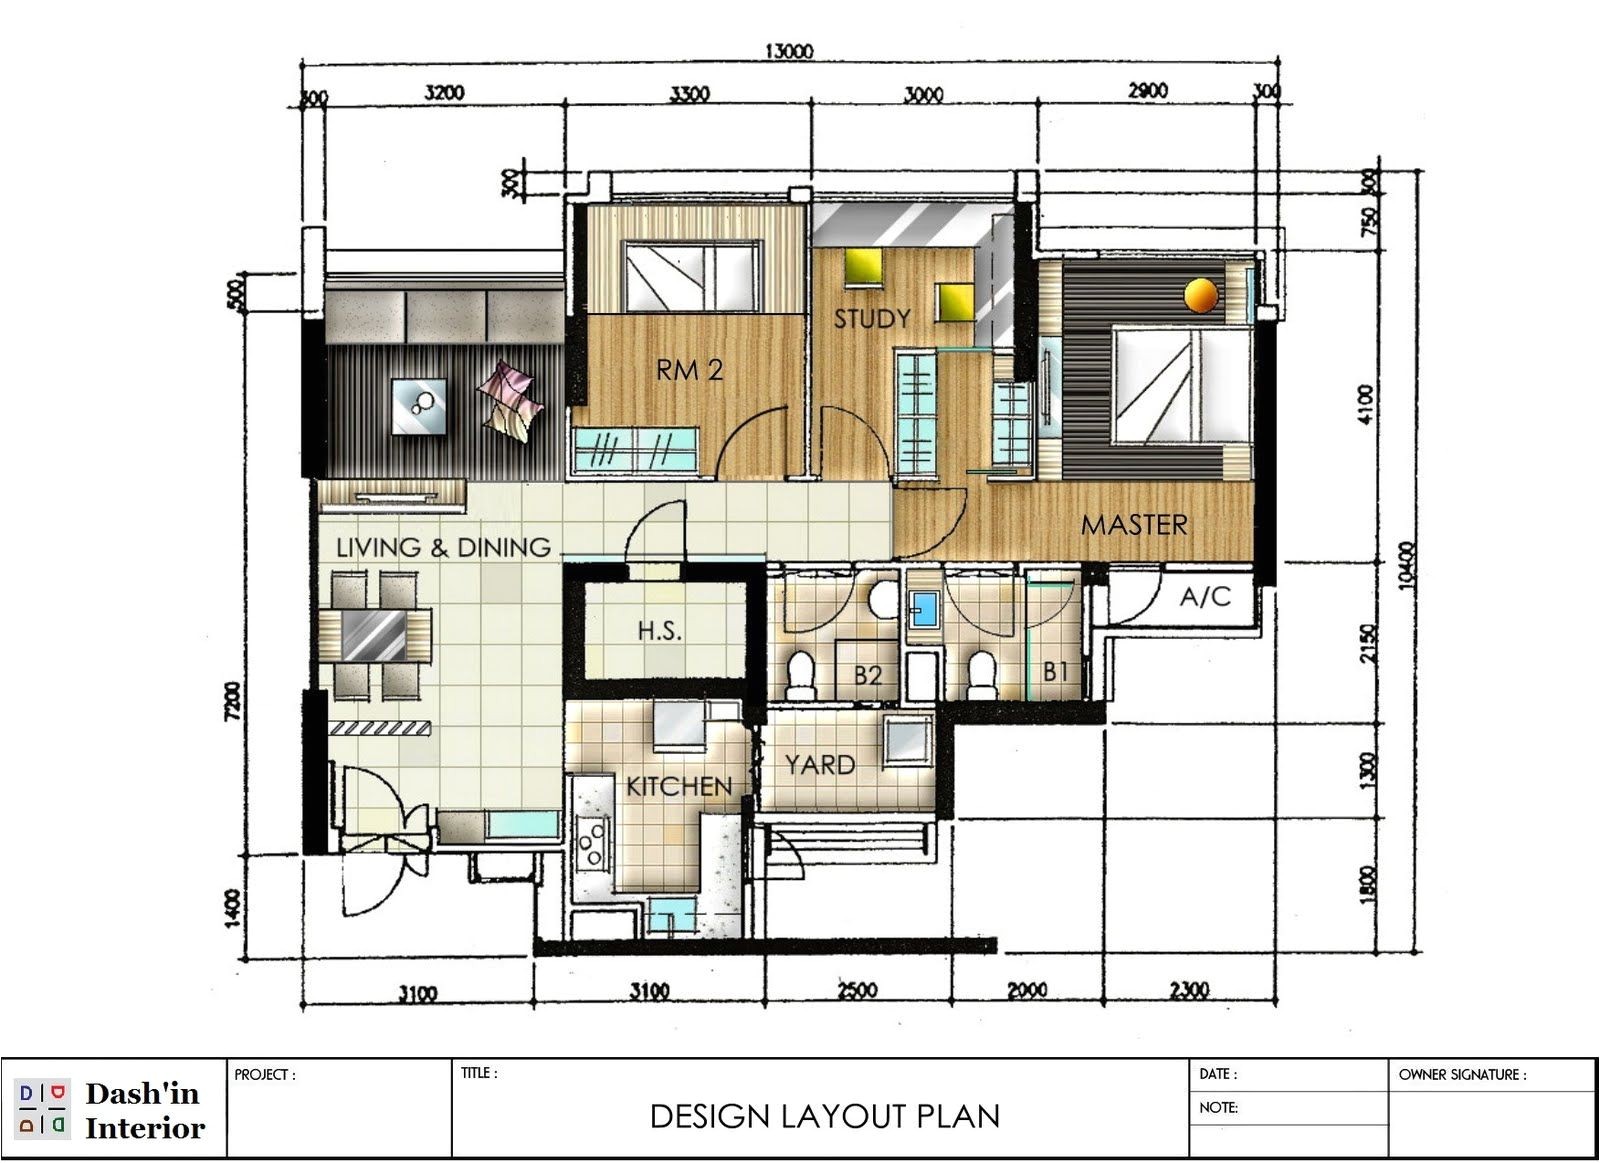 Home Interior Plan Dash Interior Hand Drawn Designs Floor Plan Layout that